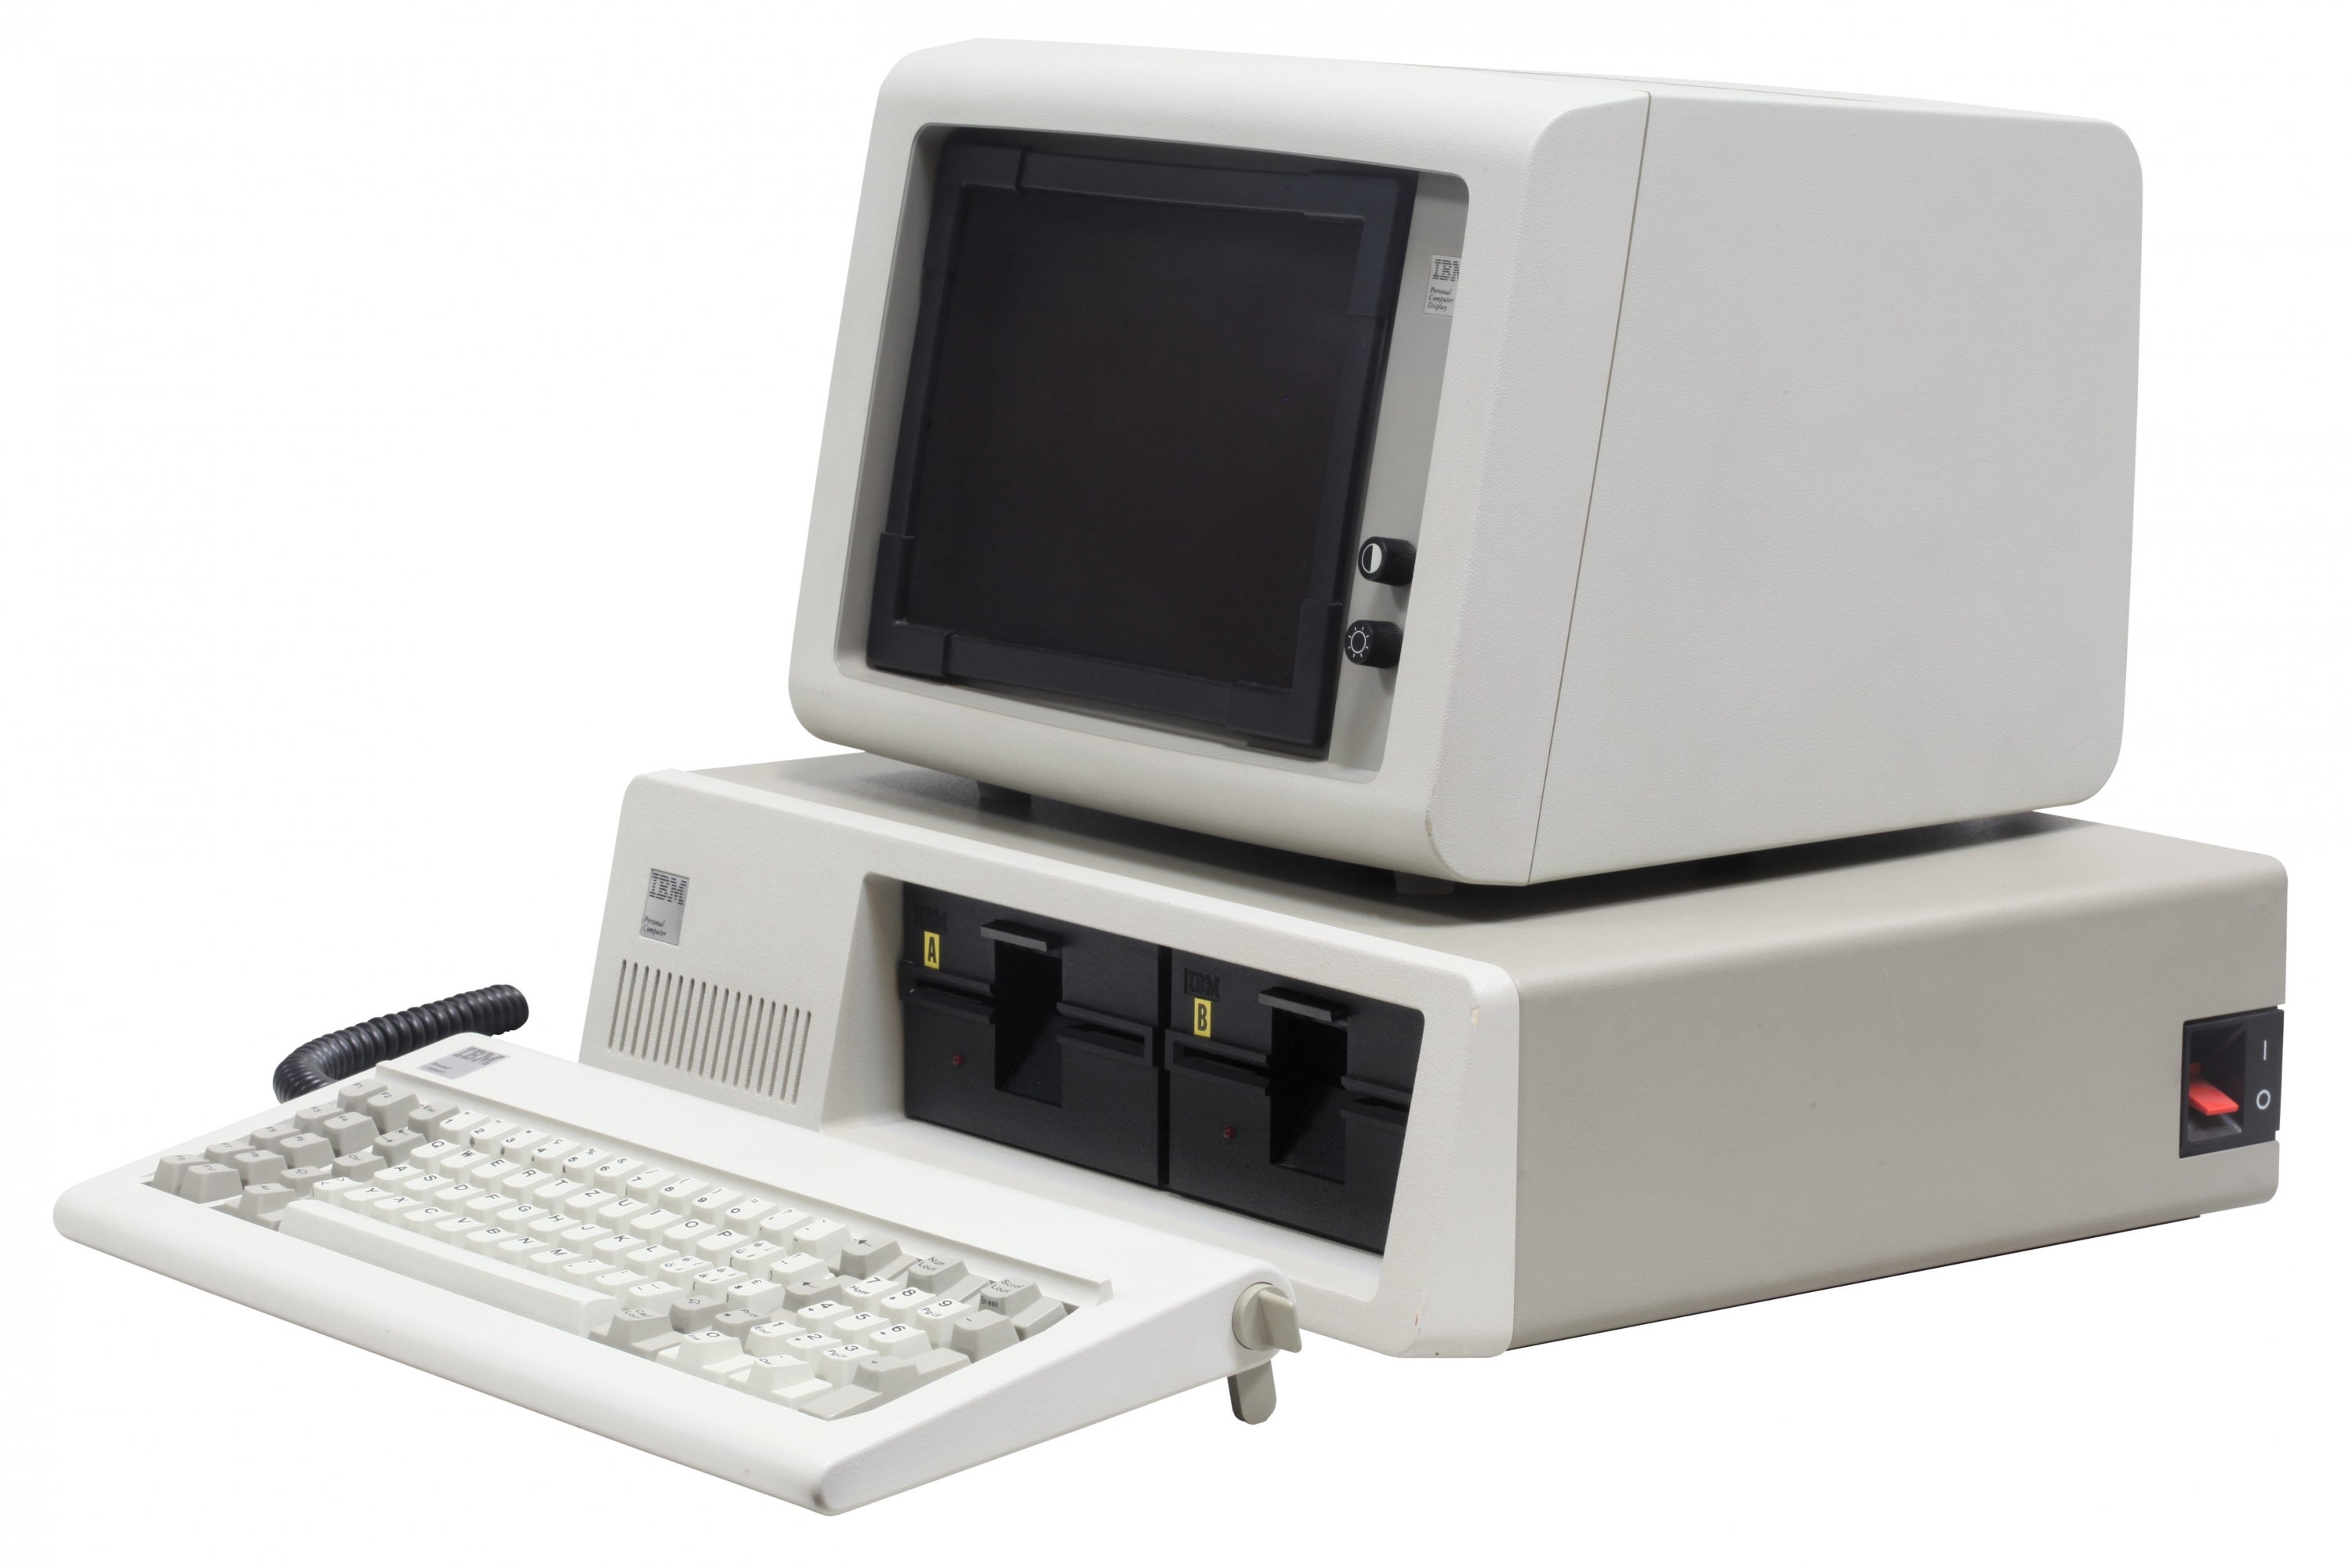 IBM PC (Courtesy Wikimedia)